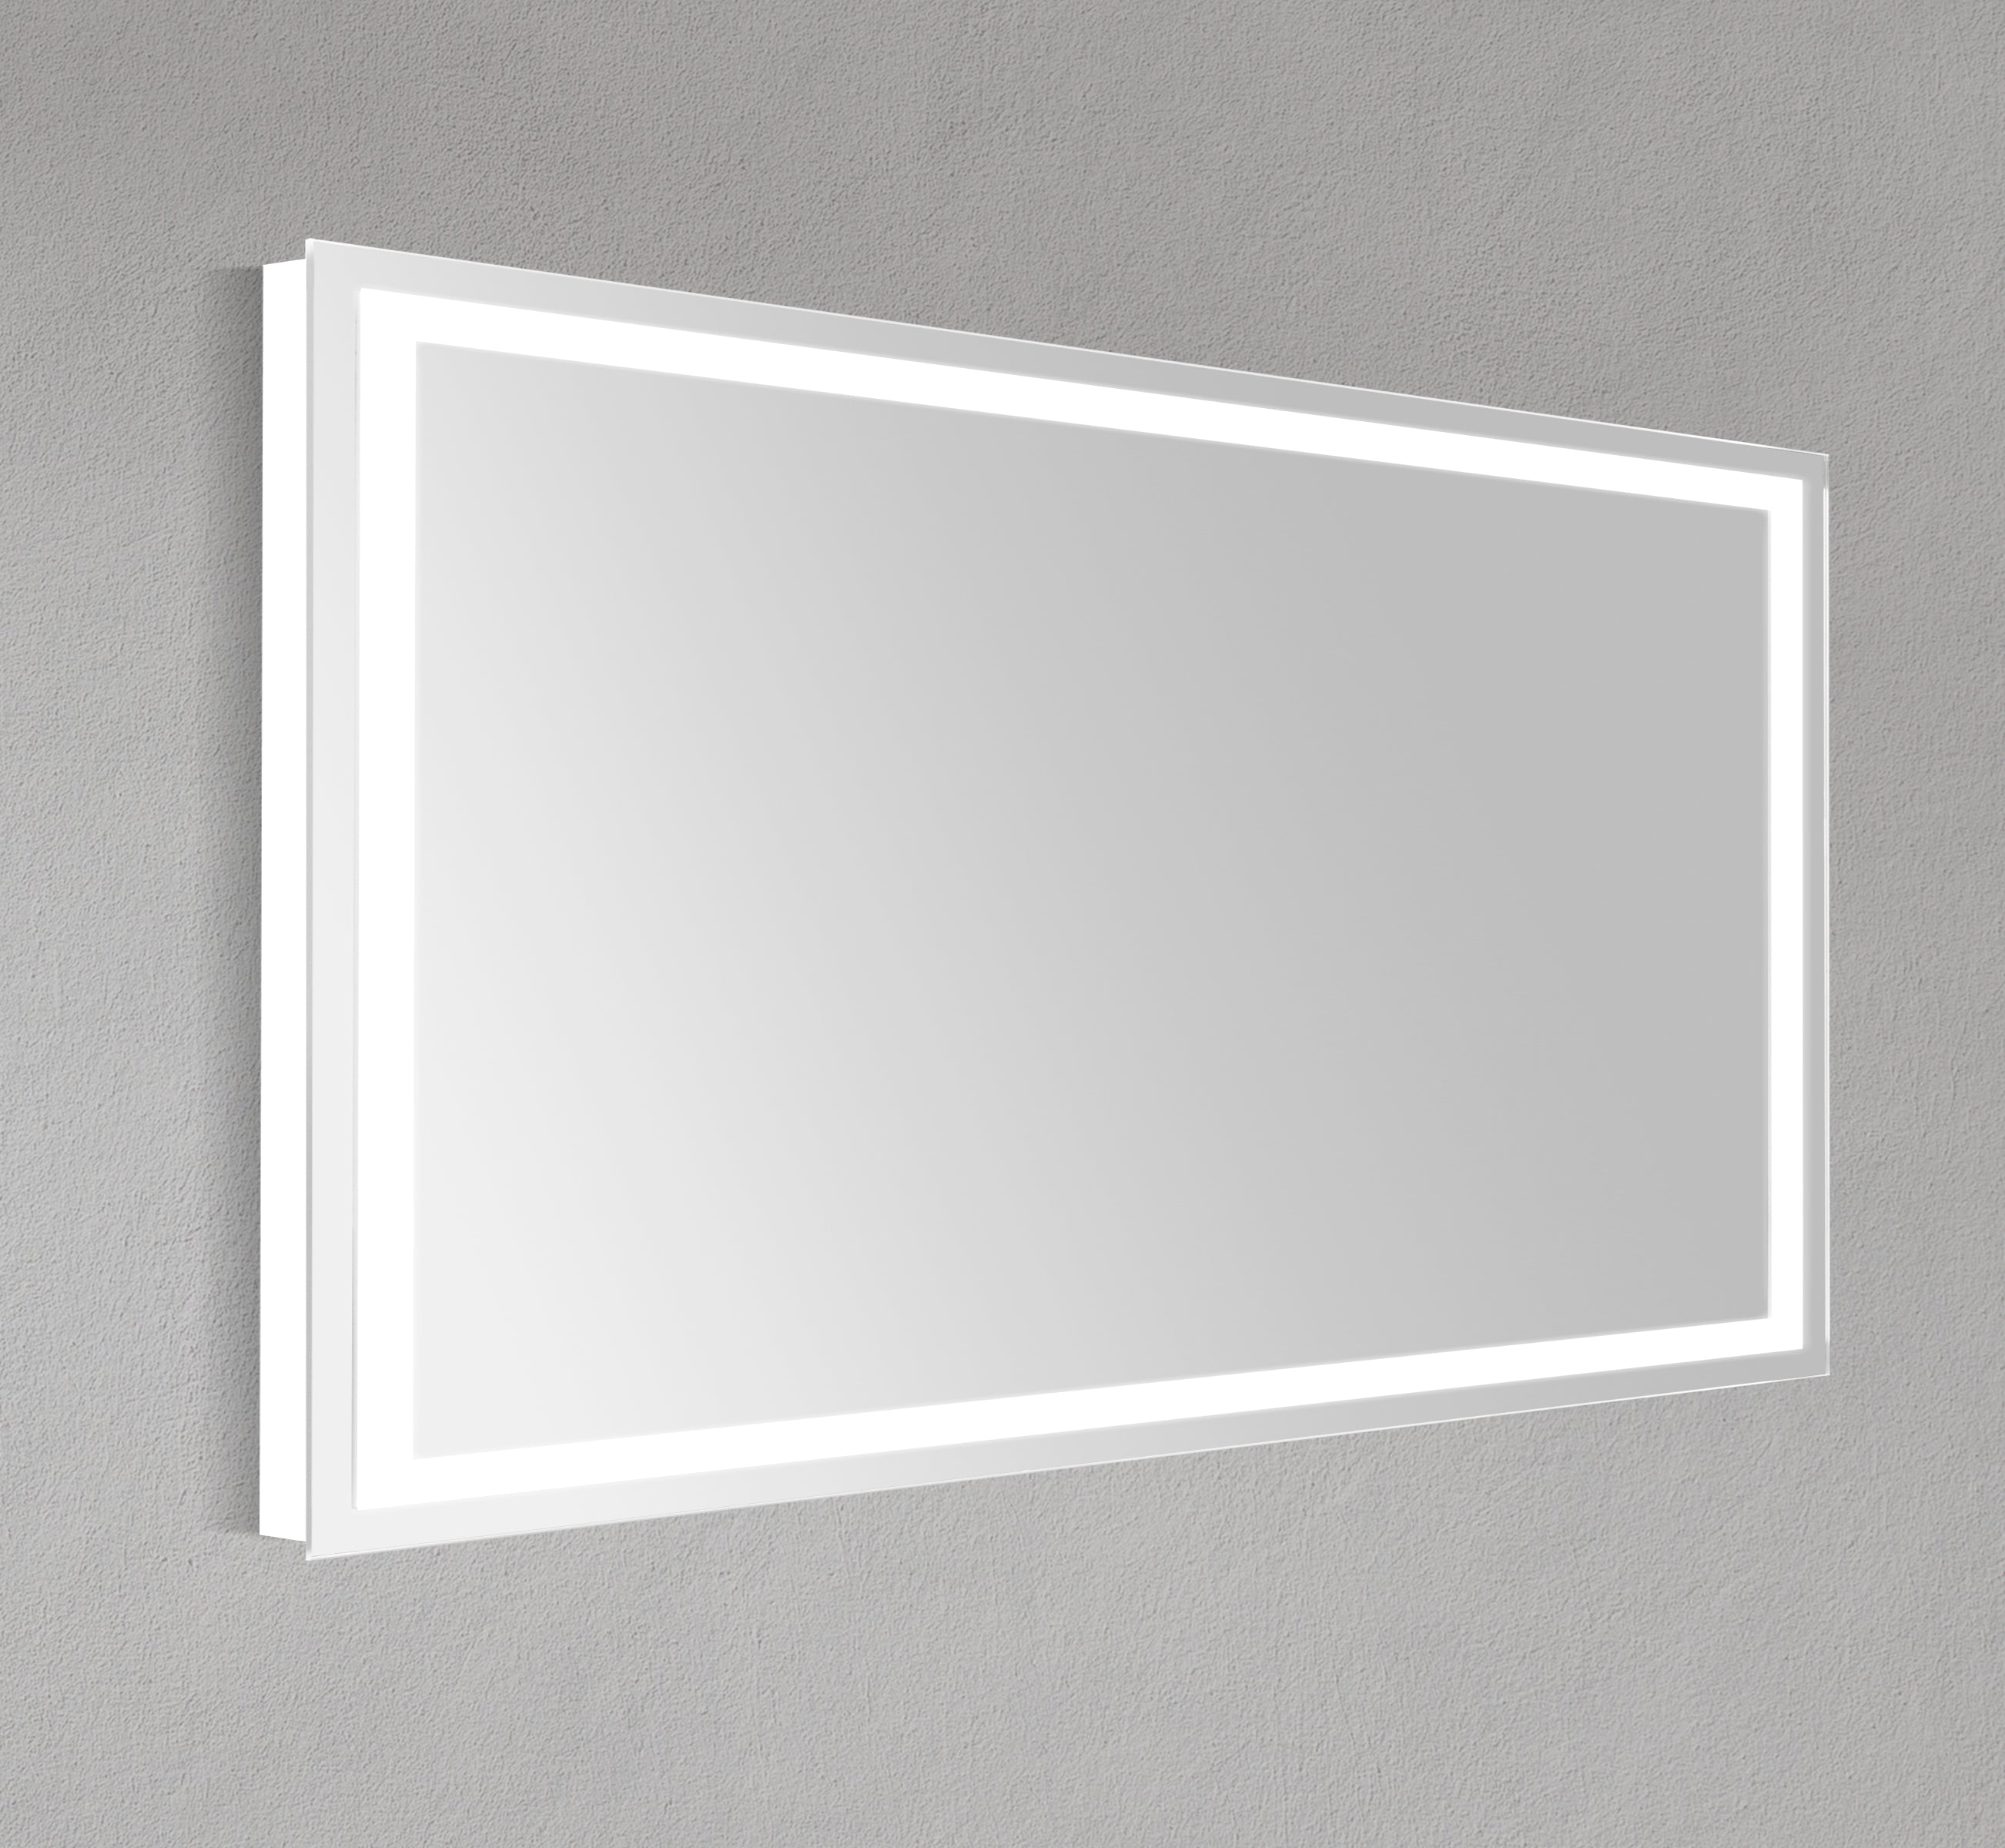 60" Frameless LED Mirror